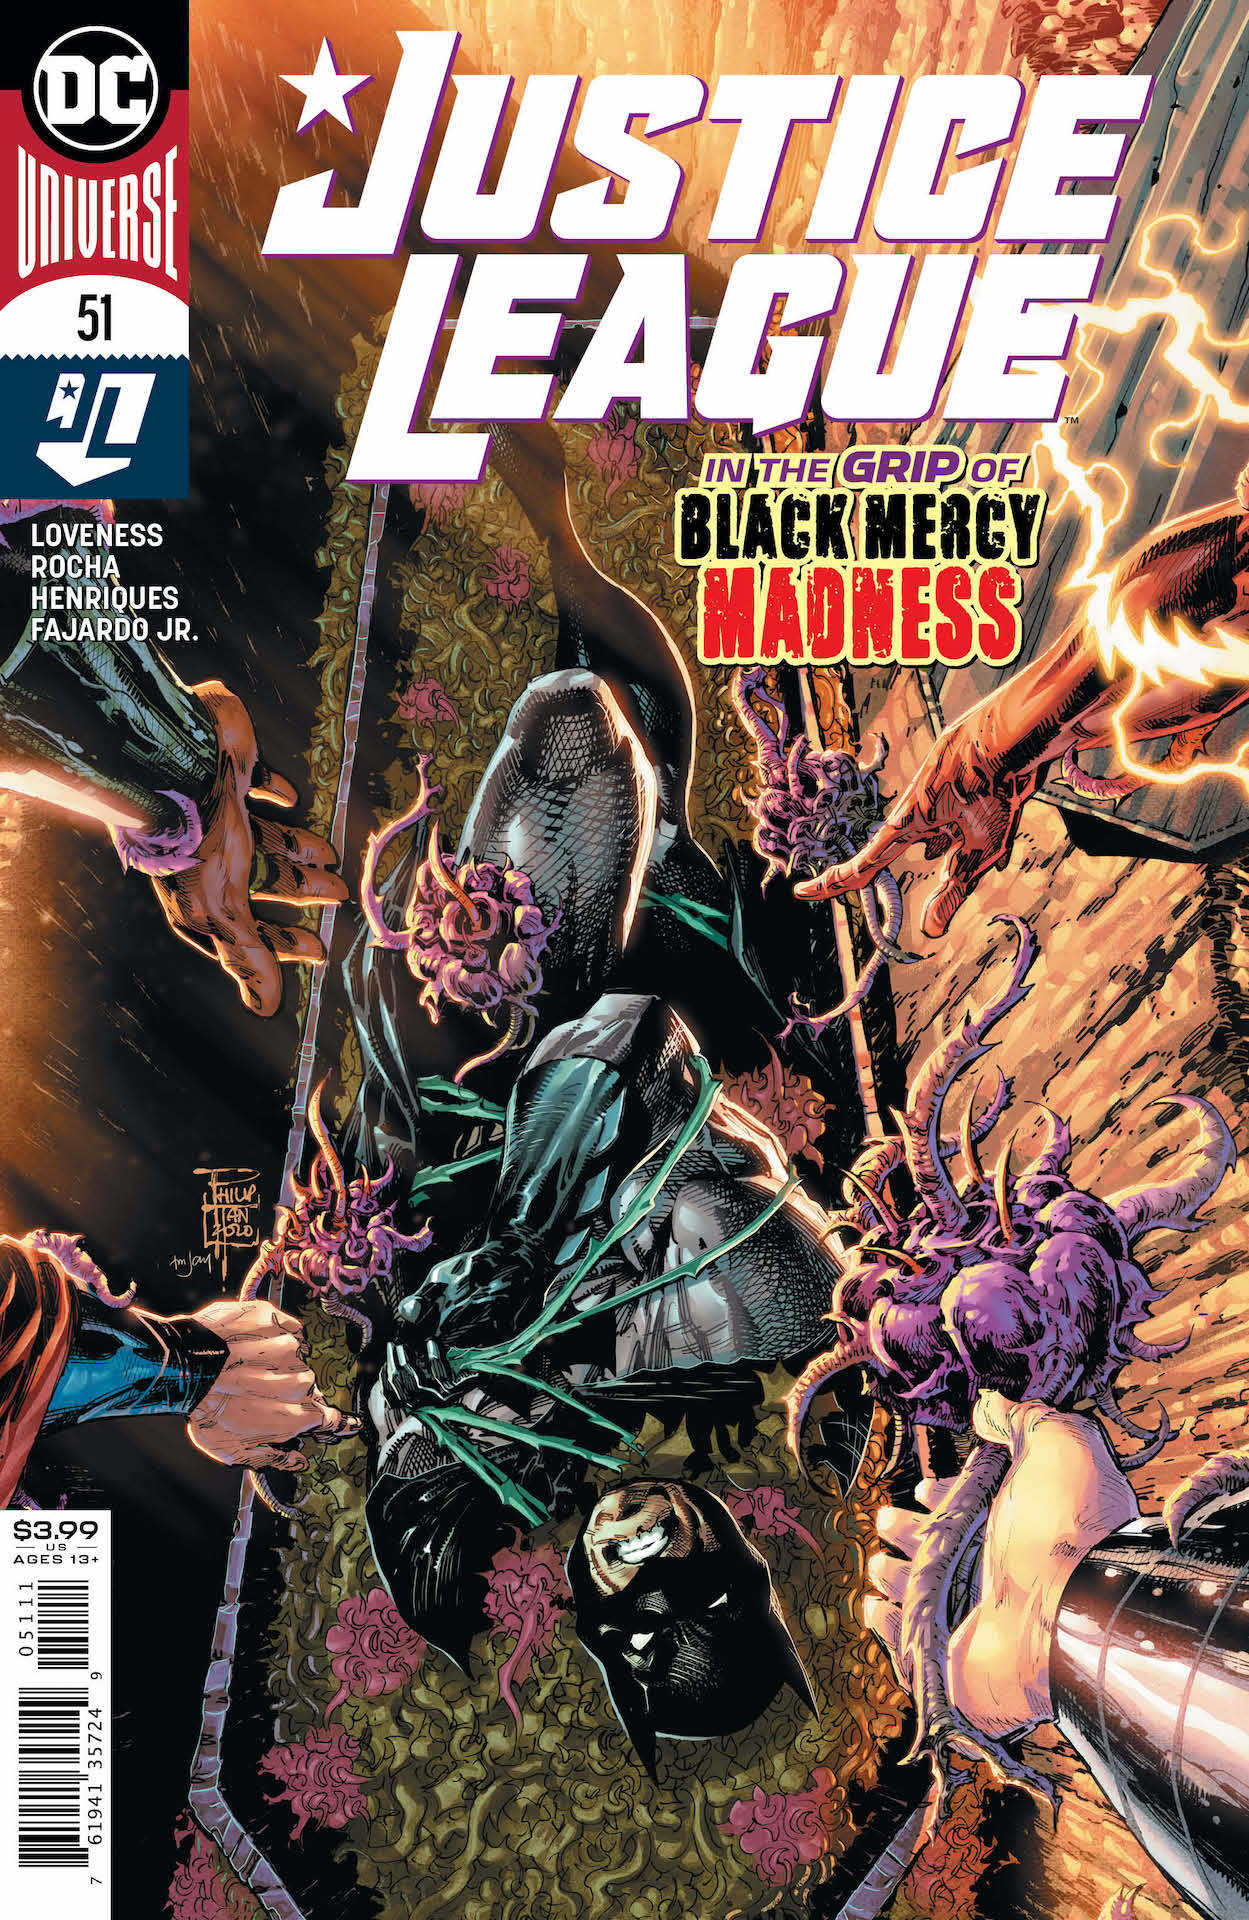 DC Preview: Justice League #51